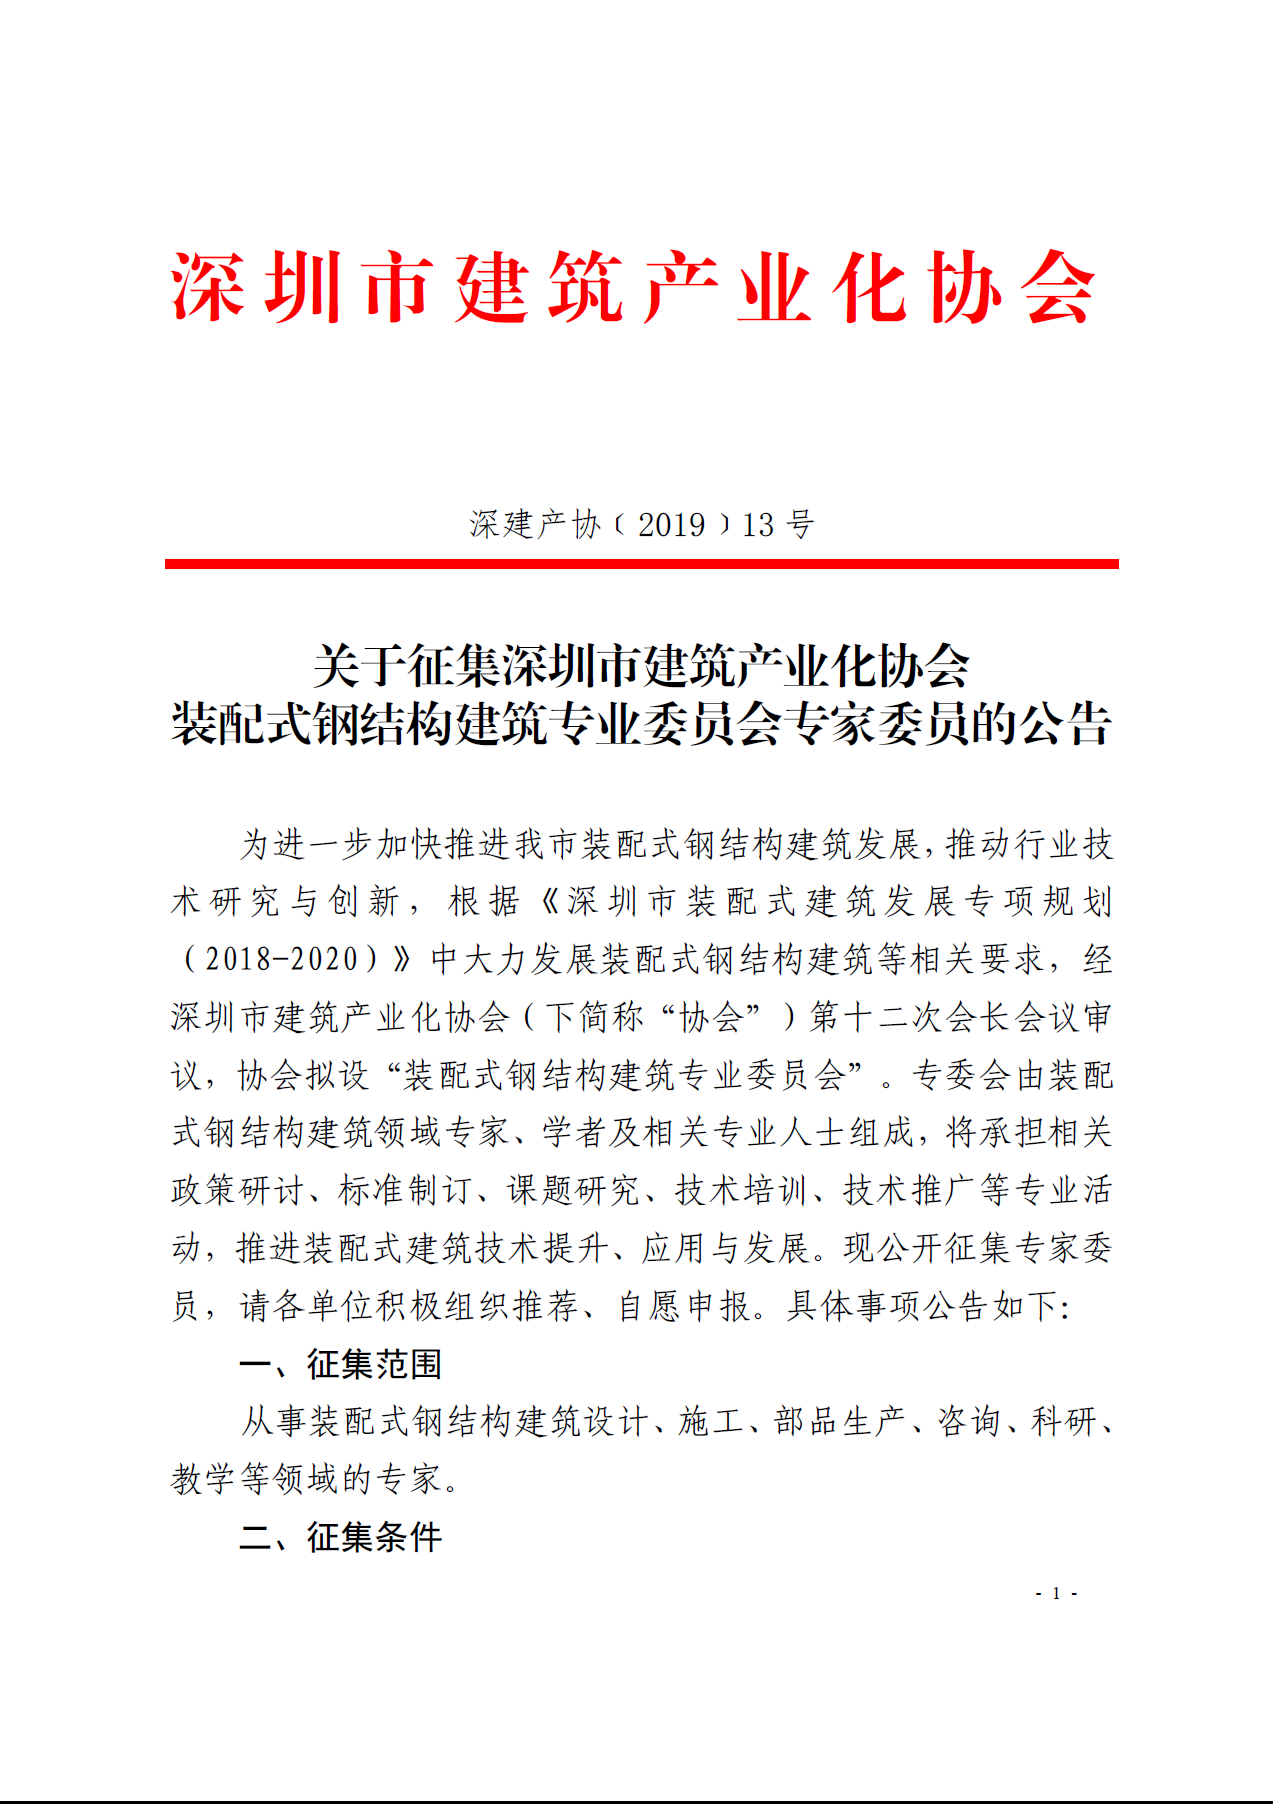 关于征集深圳市建筑产业化协会装配式钢结构建筑专业委员会专家委员的公告